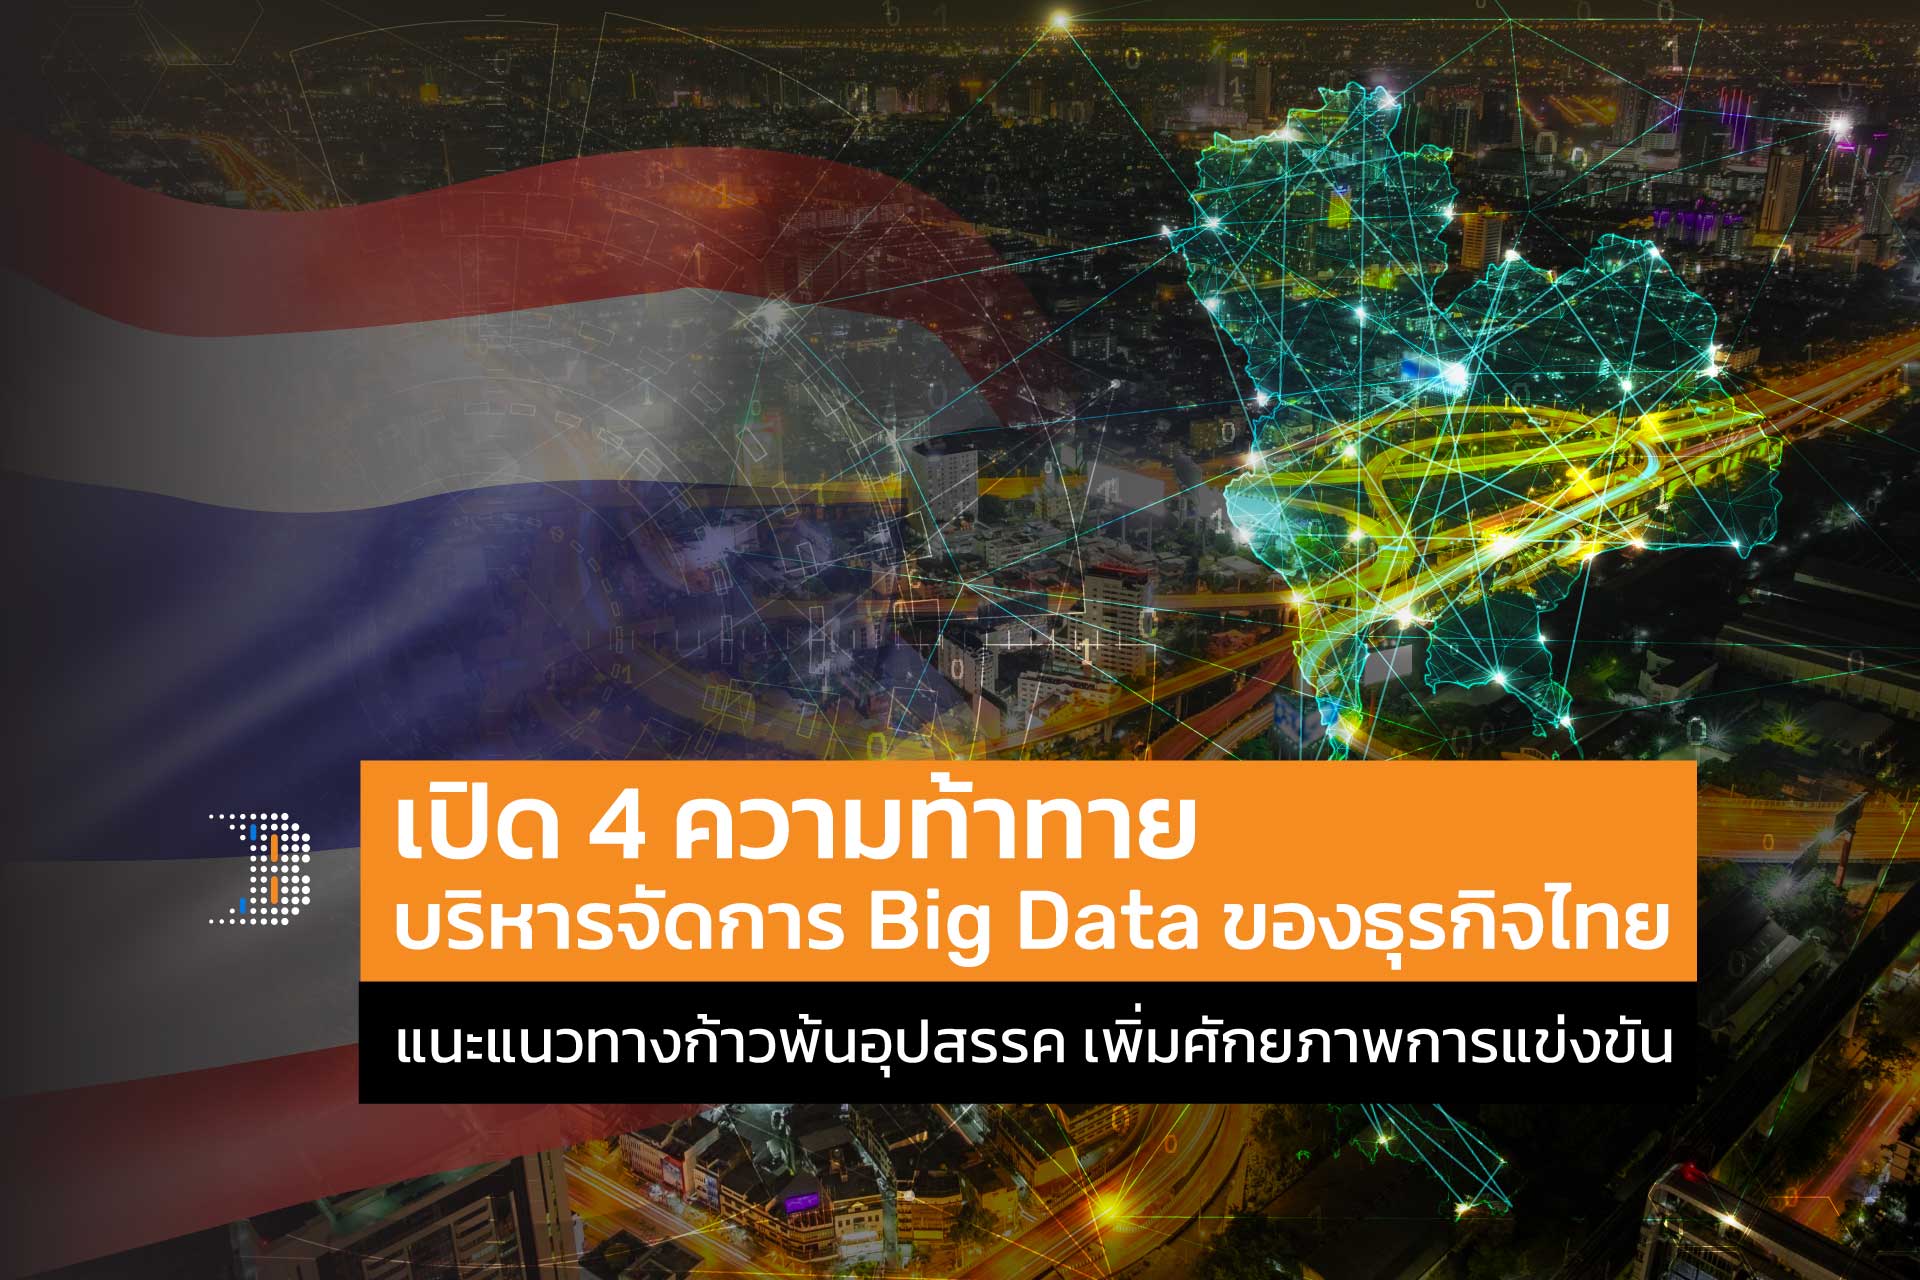 เปิด 4 ความท้าทายบริหารจัดการ Big Data ของธุรกิจไทย แนะแนวทางก้าวพ้นอุปสรรค เพิ่มศักยภาพการแข่งขัน